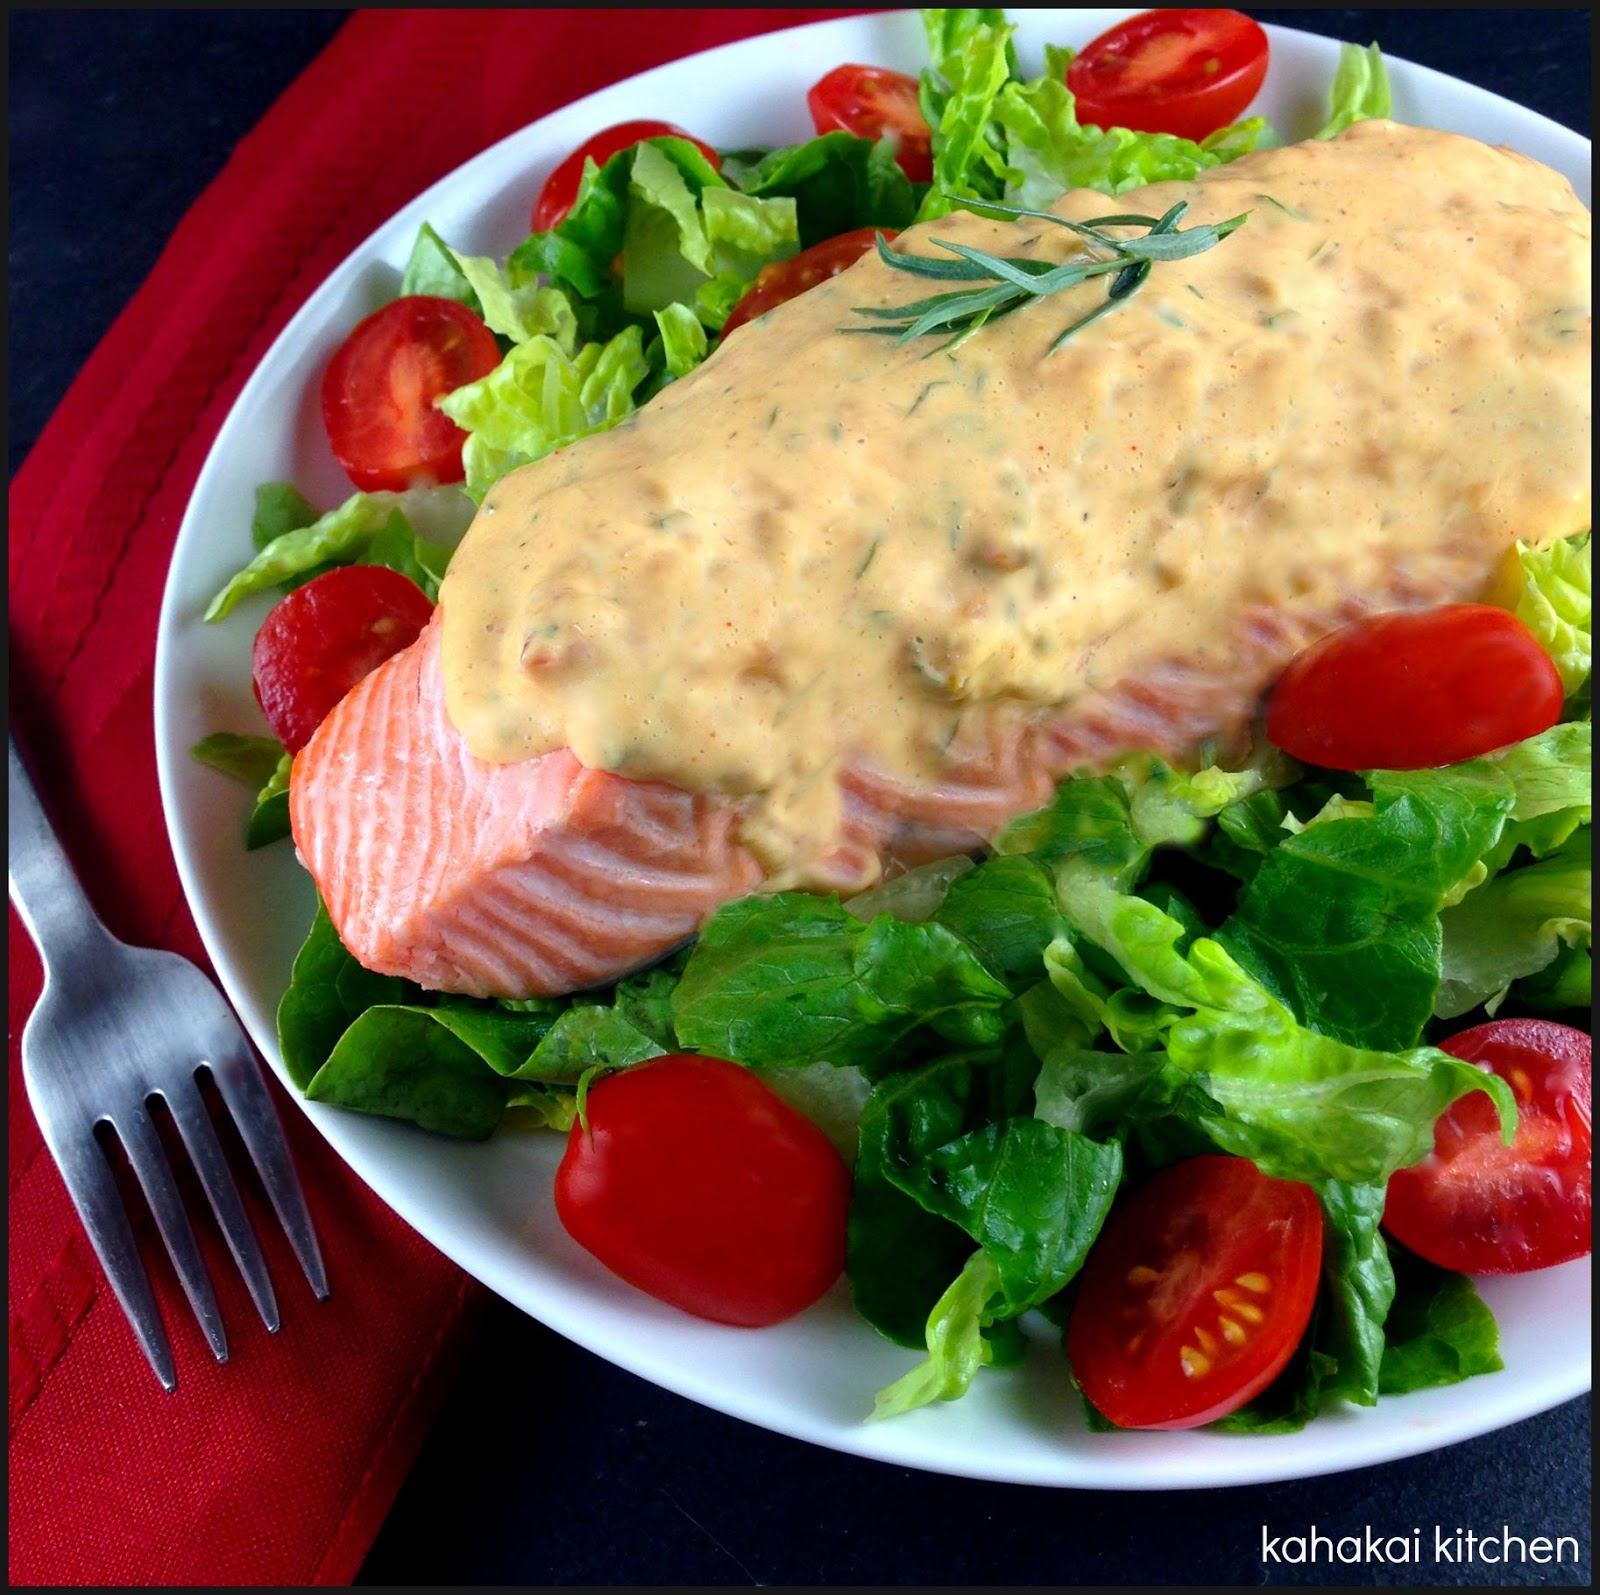 Kahakai Kitchen: Poached Salmon with Tomato Béarnaise Sauce